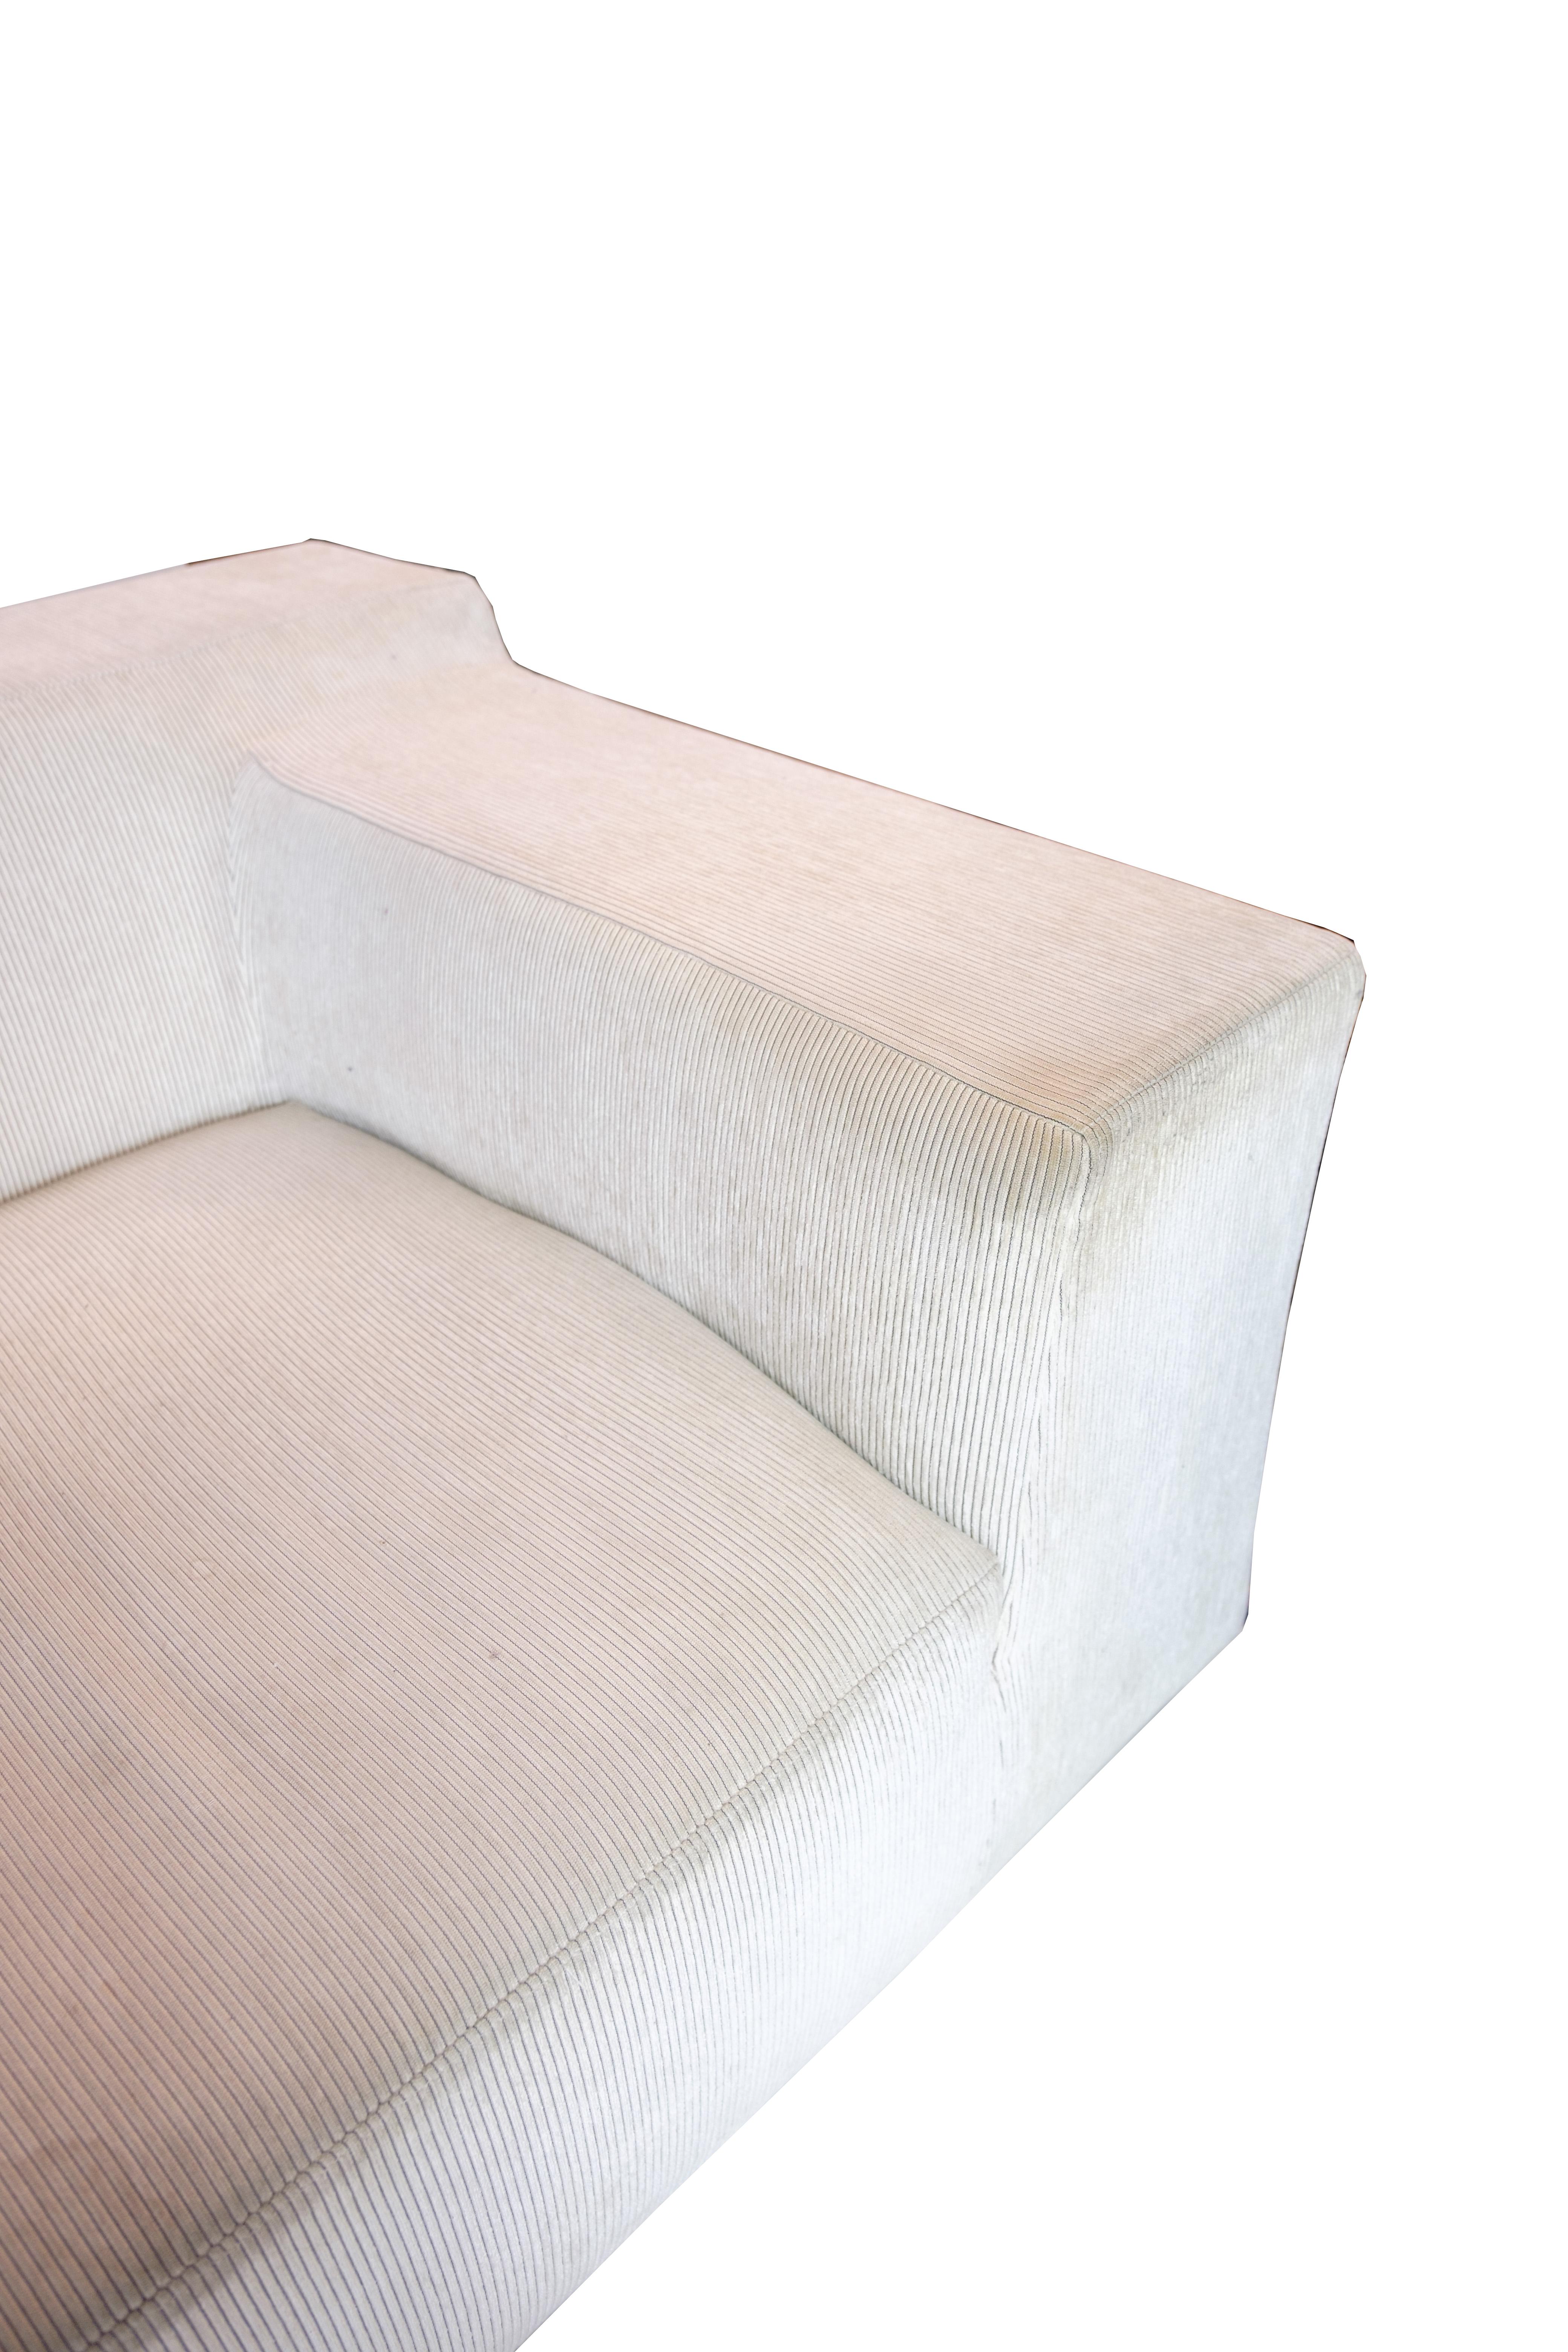 Canapé scandinave moderne, modèle Baseline conçu par Jens Juul Eilersen en vente 3